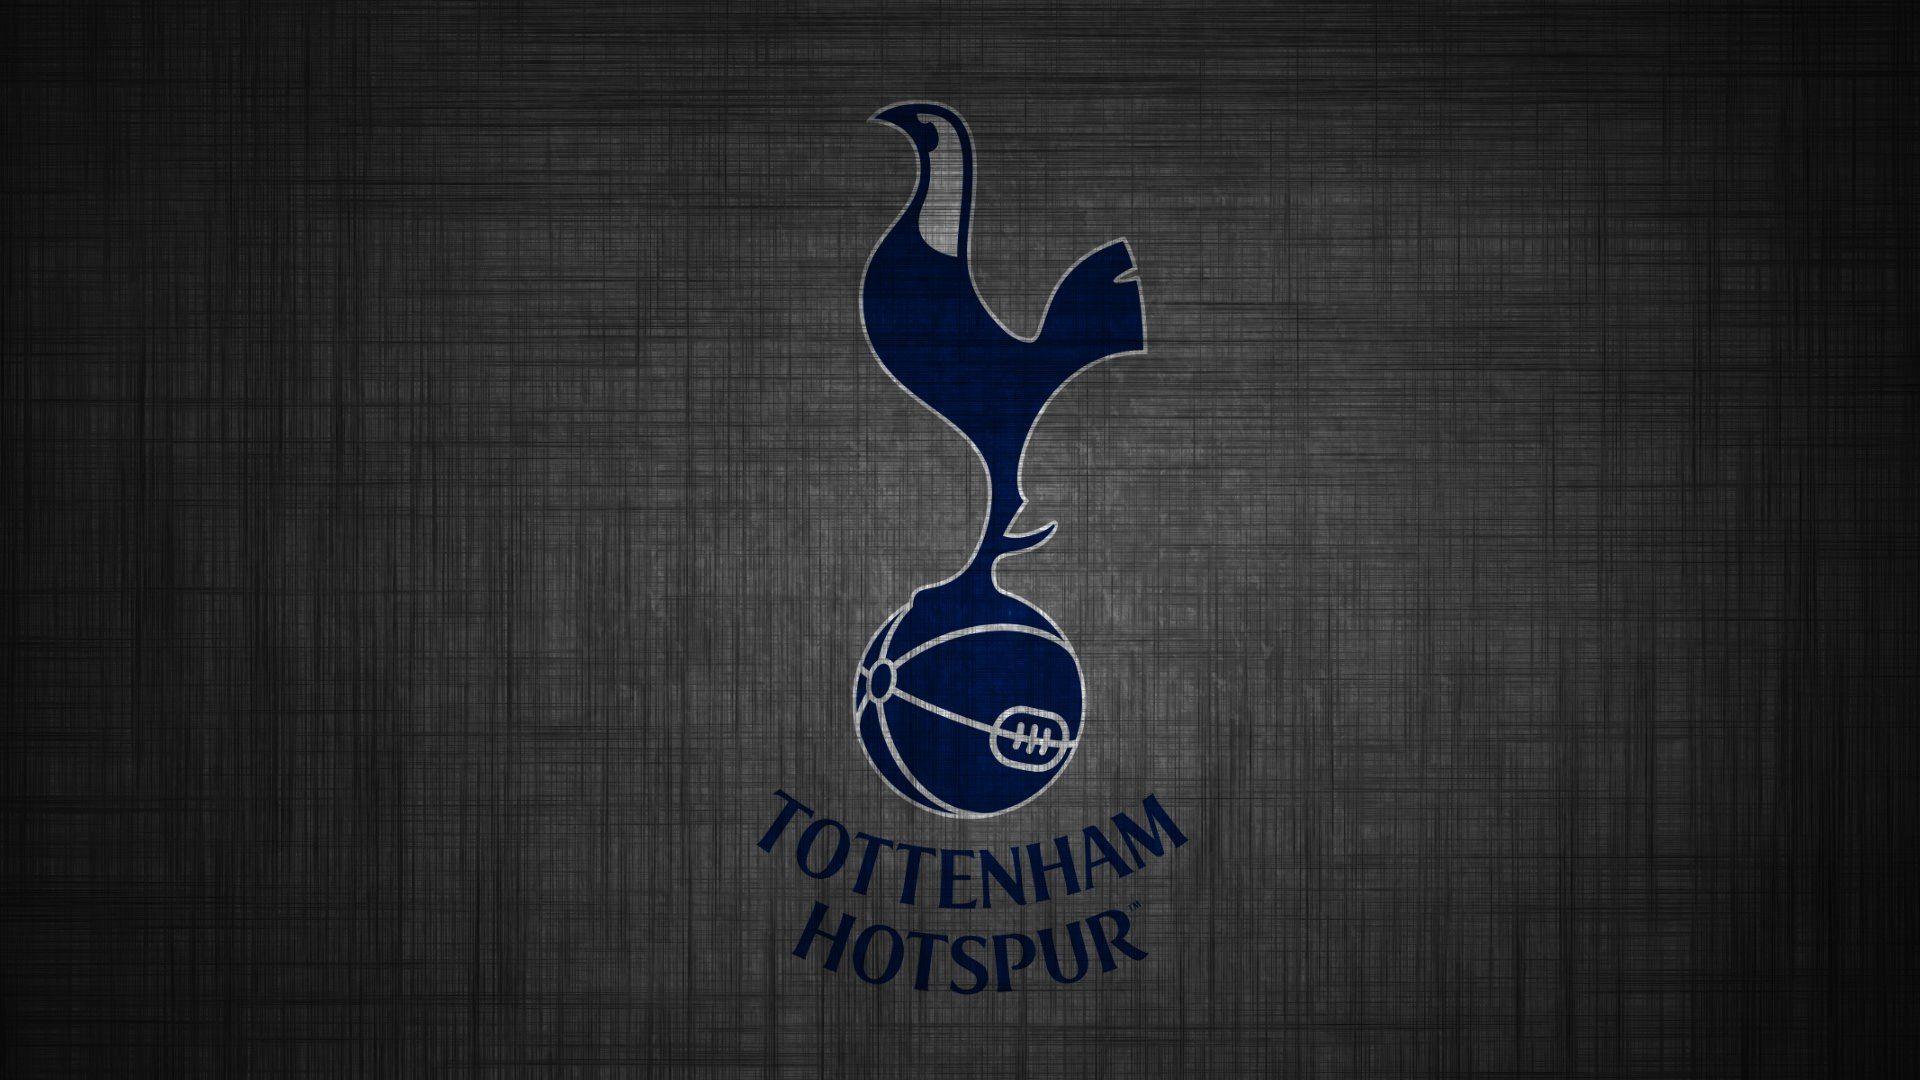 Tottenham Hotspur iPhone Wallpaper | Tottenham hotspur wallpaper, Tottenham  wallpaper, Tottenham